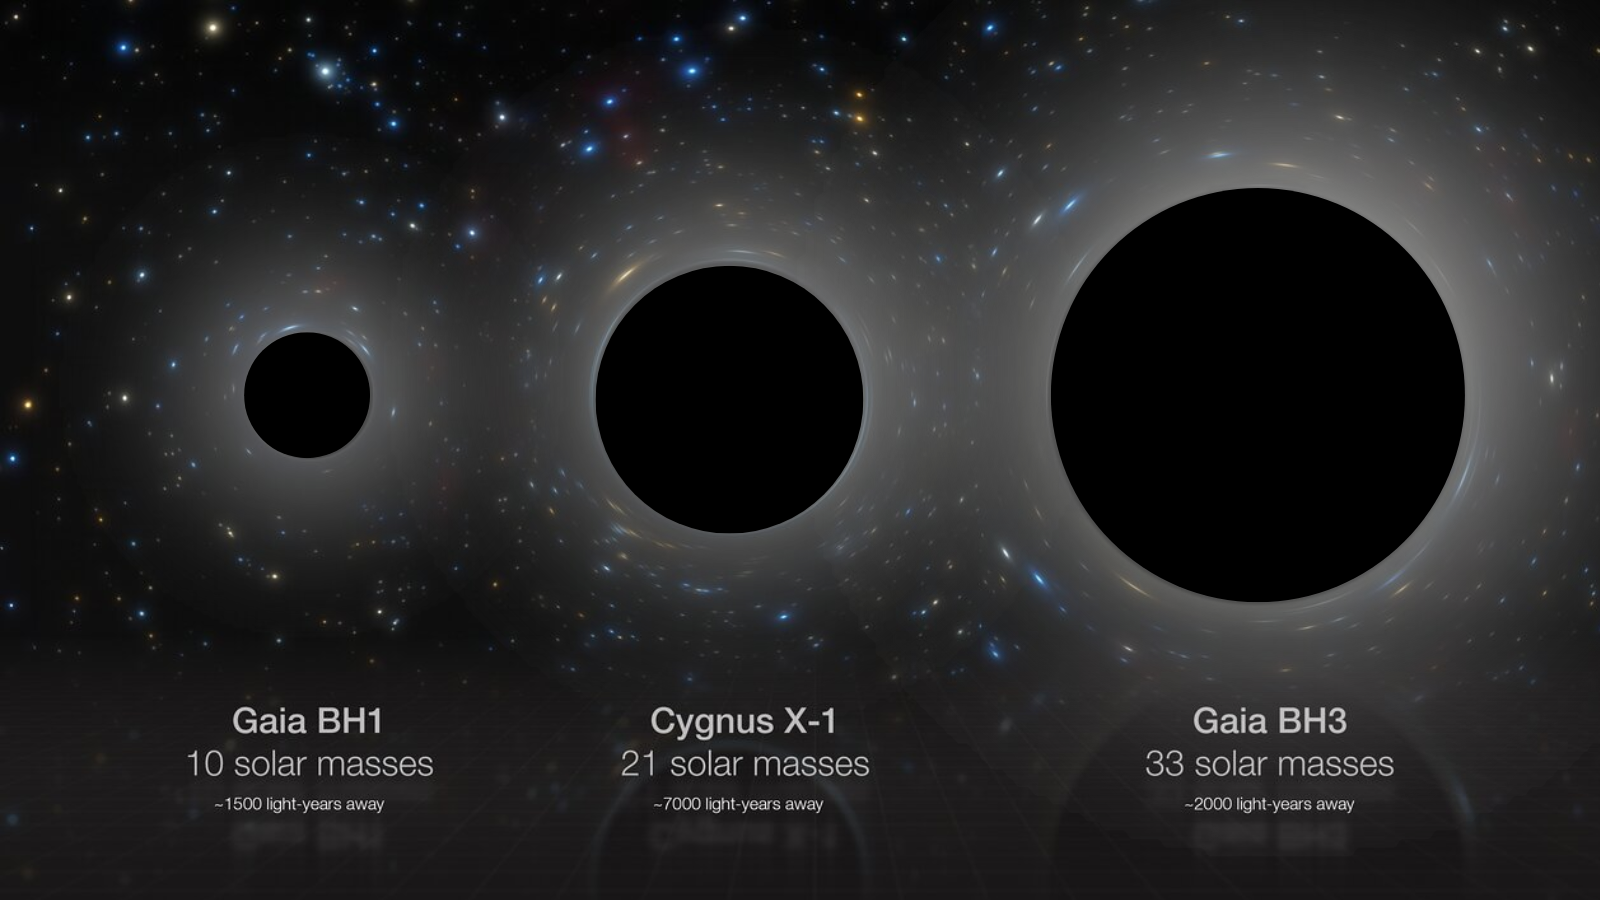 رسم تخطيطي يوضح المقارنة جنبًا إلى جنب بين ثلاثة ثقوب سوداء